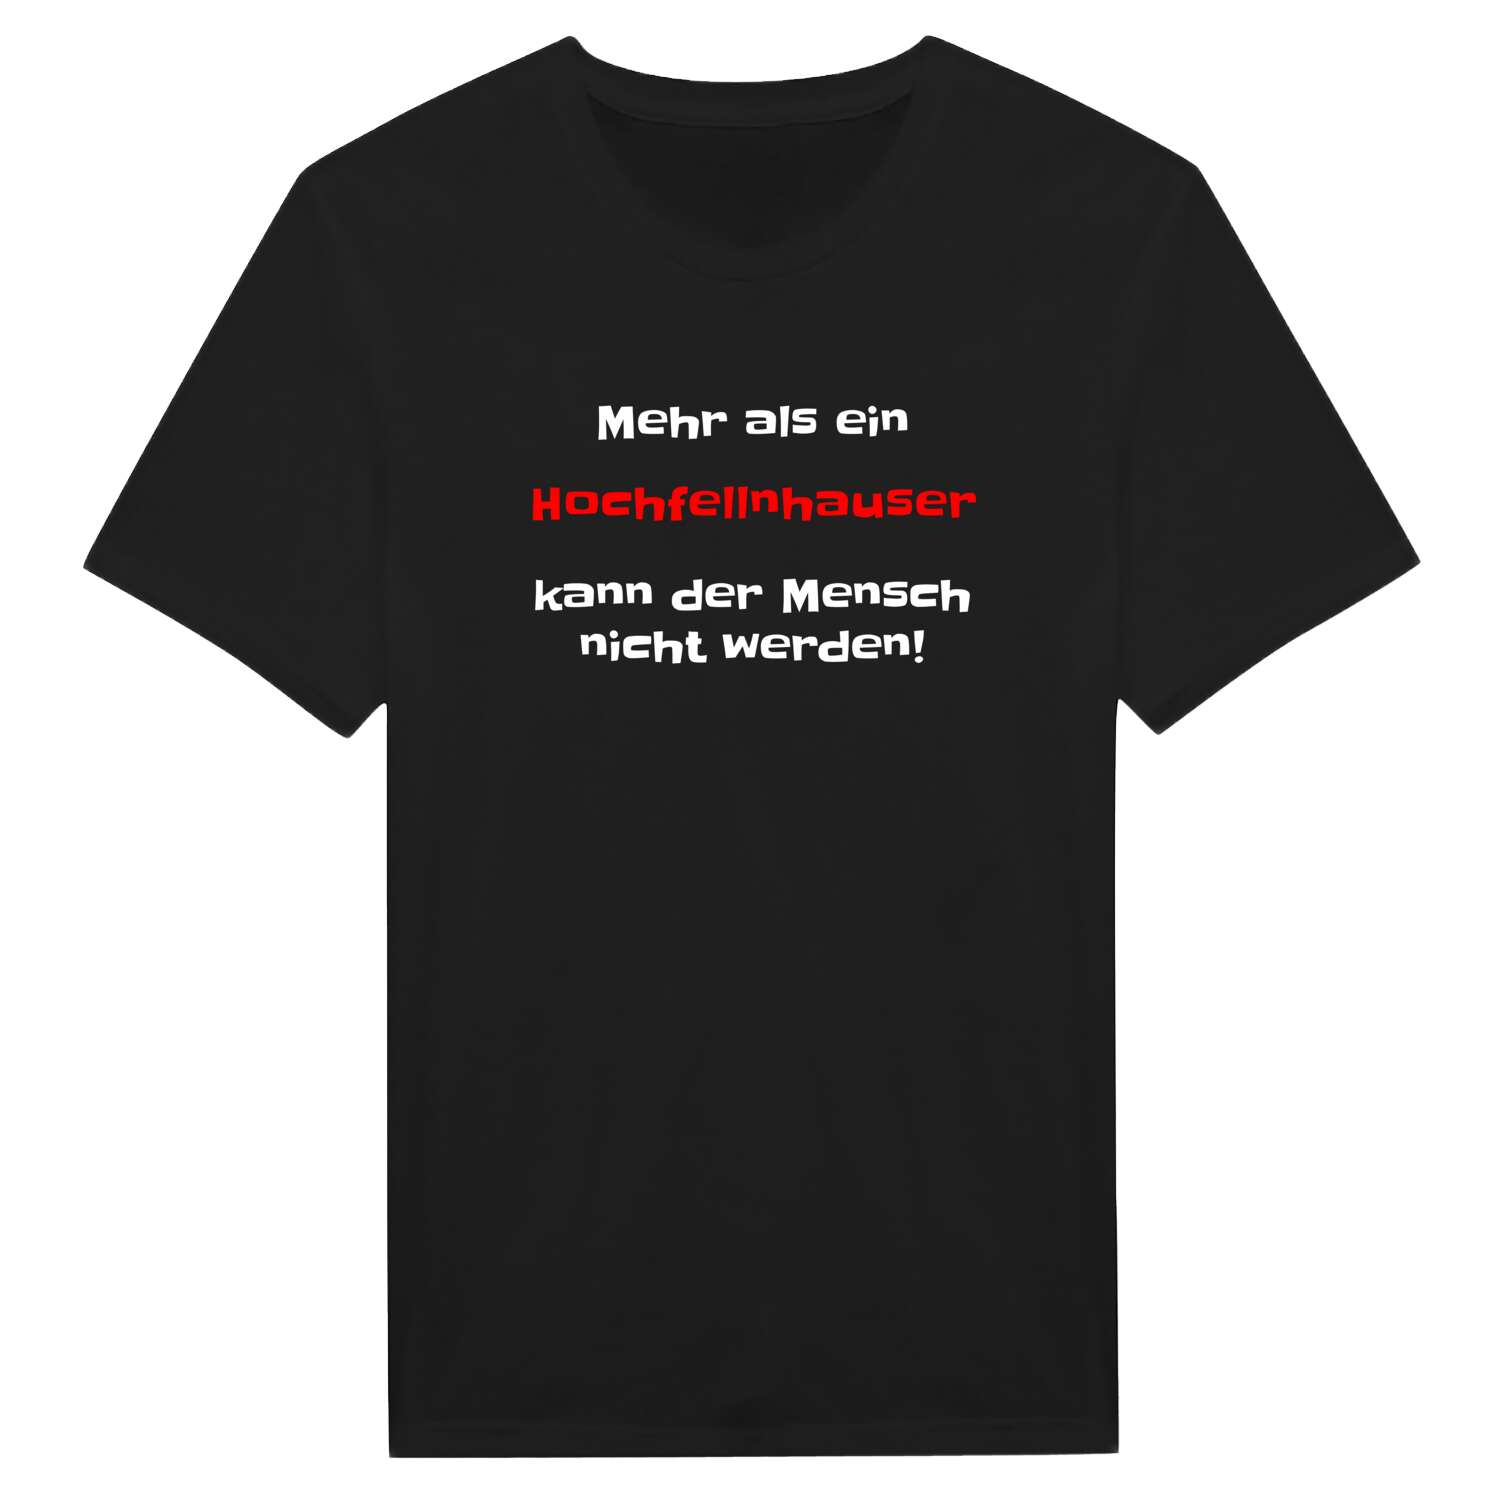 Hochfellnhaus T-Shirt »Mehr als ein«